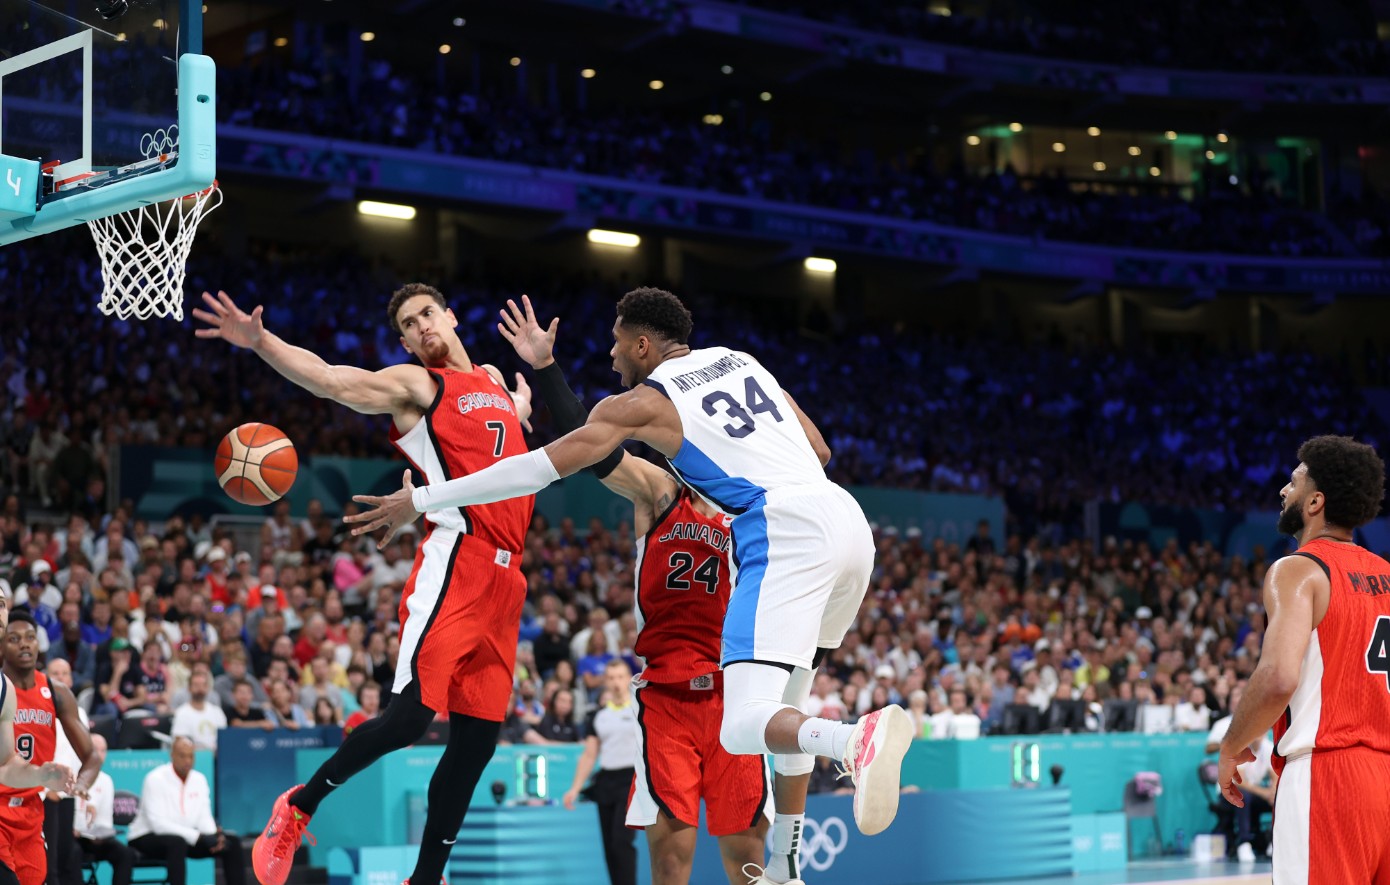 Ολυμπιακοί Αγώνες 2024: Ήττα με 86-79 για την Ελλάδα στο ντέρμπι με τον Καναδά παρά την τεράστια προσπάθεια στο 2ο ημίχρονο